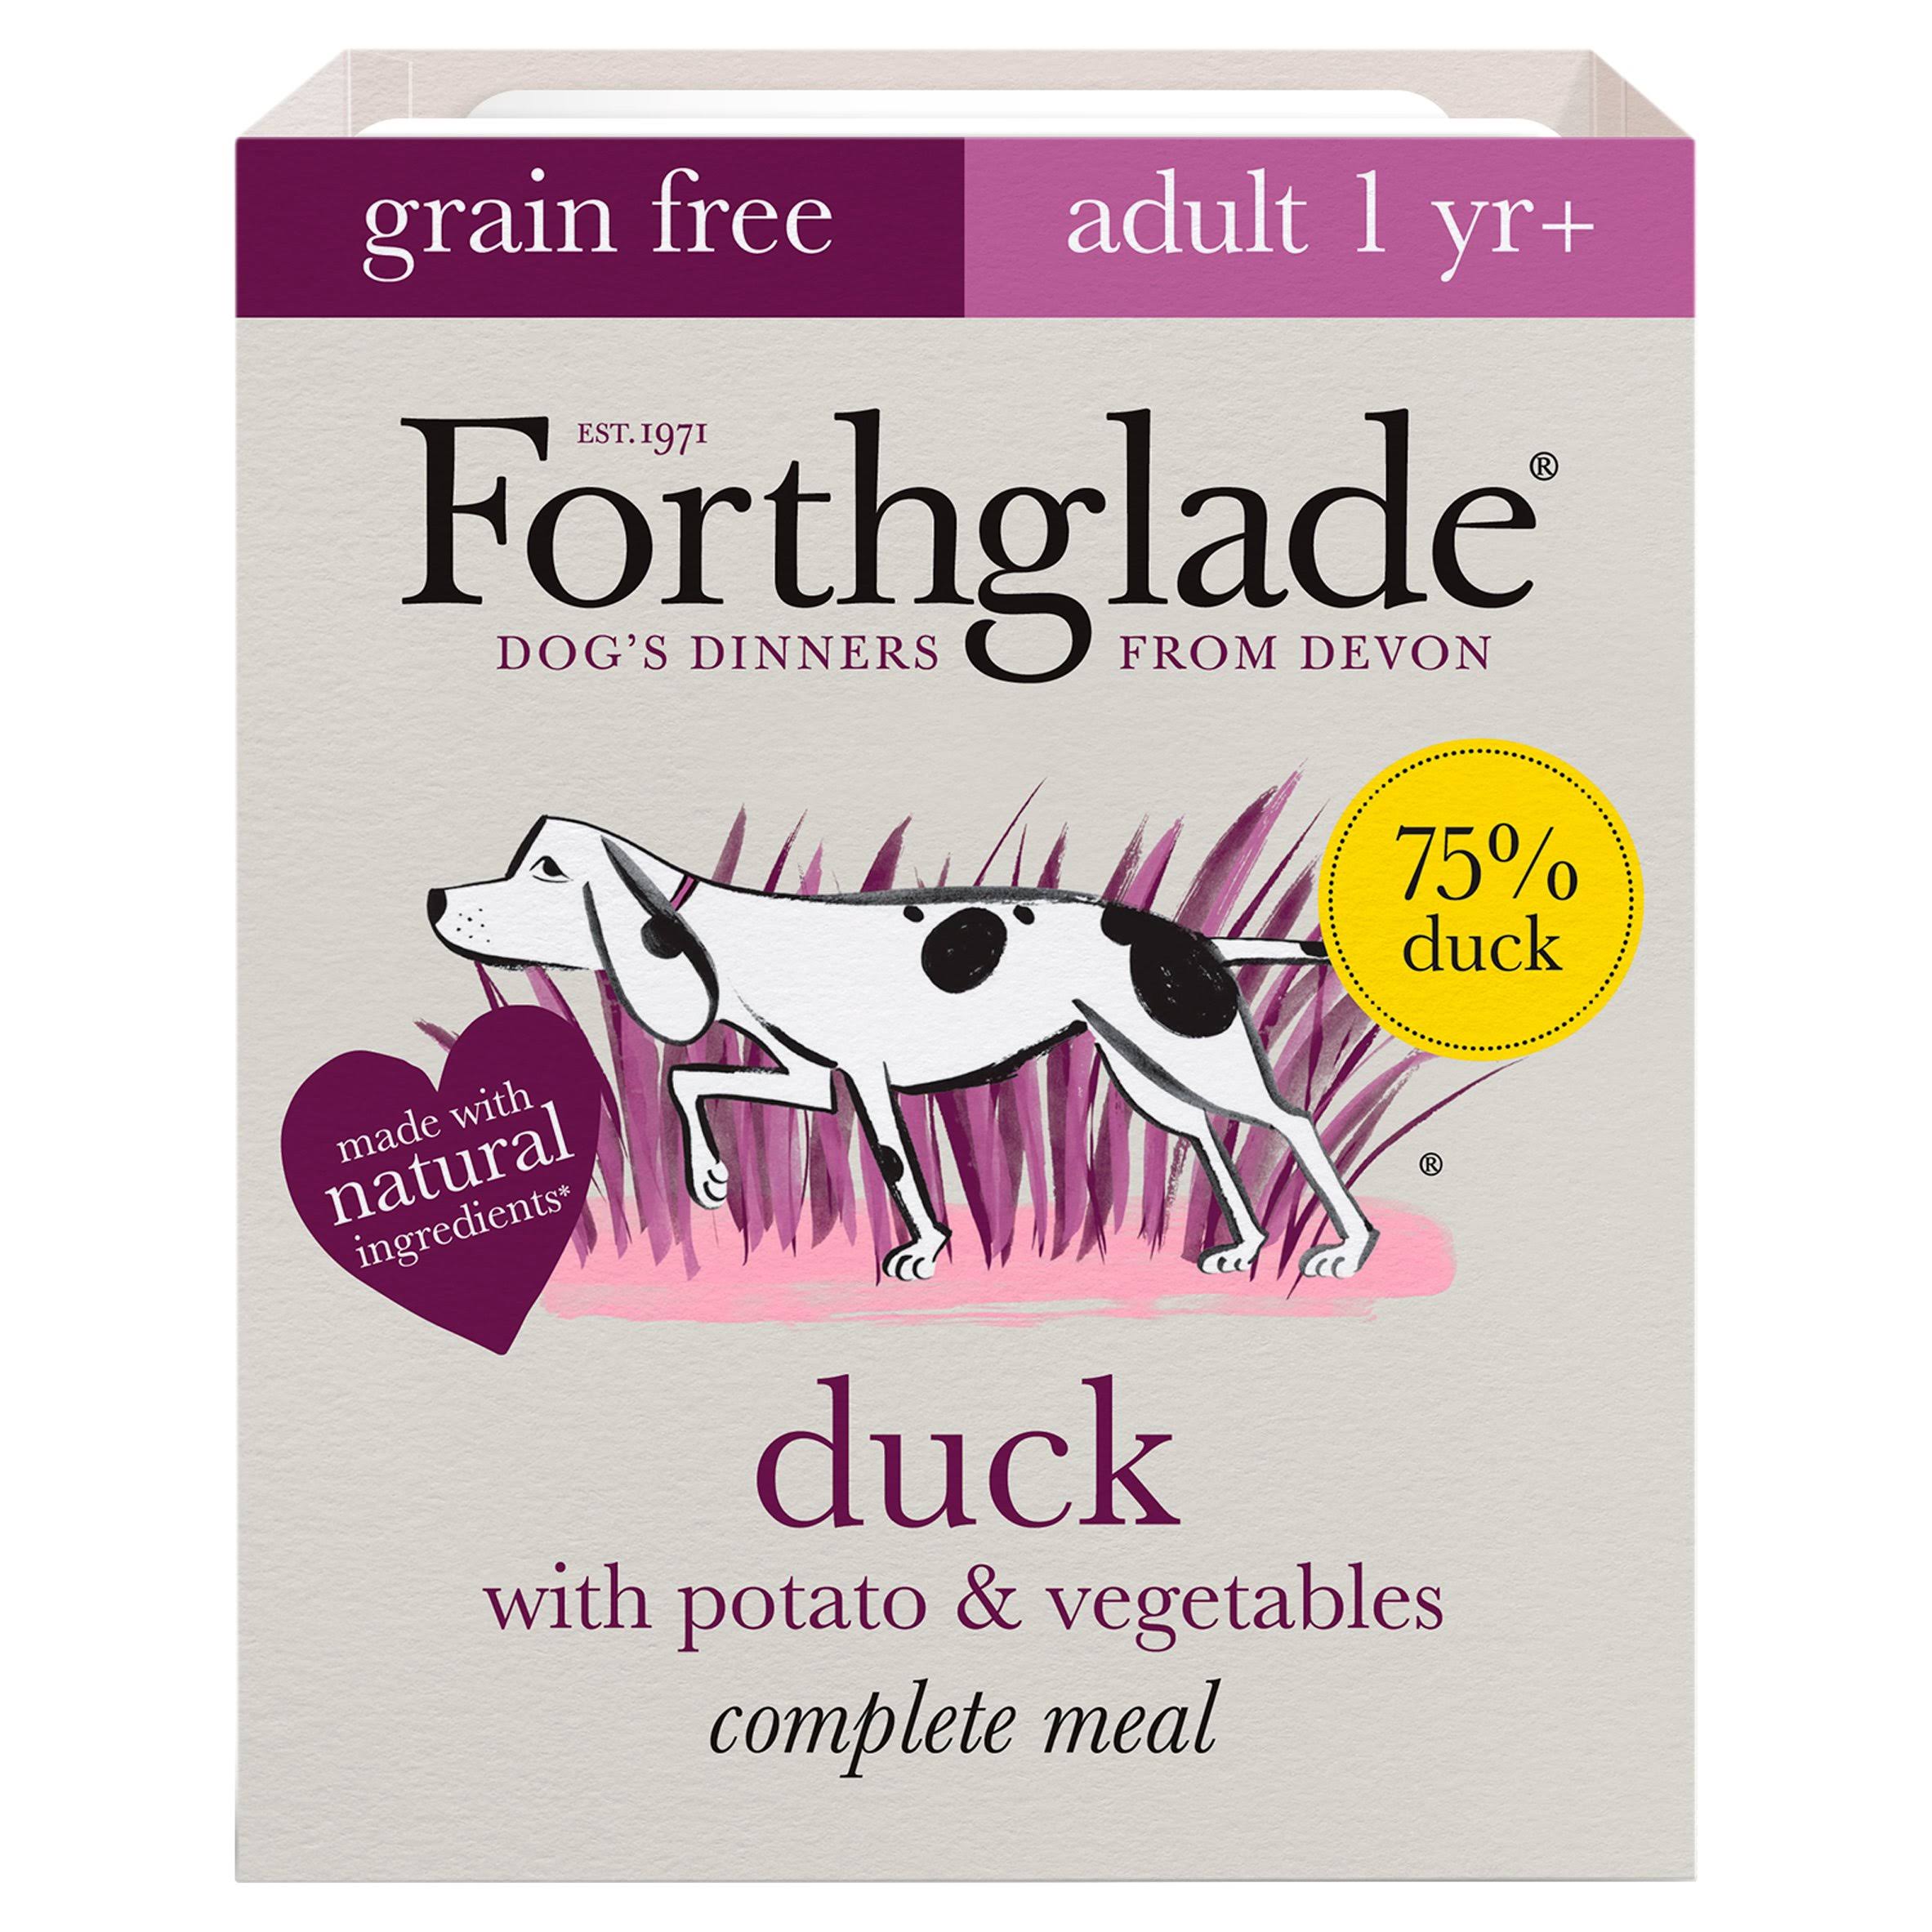 Forthglade Complete Grain Free Dog Food - 395g